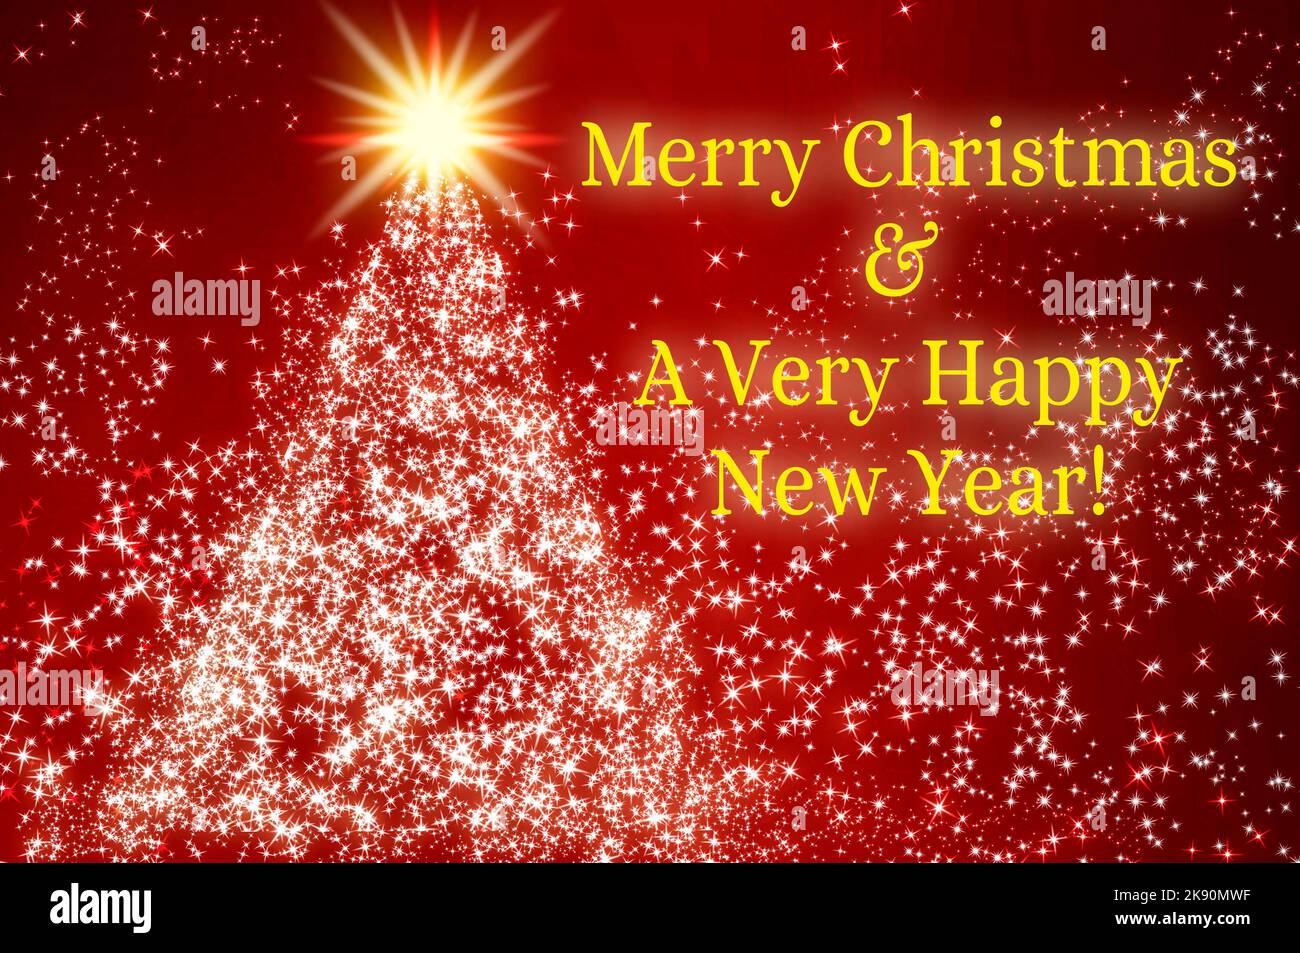 Frohe Weihnachten und ein sehr glücklicher Text für das neue Jahr mit leuchtendem Stern wie eine Kiefer auf rotem Hintergrund. Weihnachtsfeier Konzept. Stockfoto